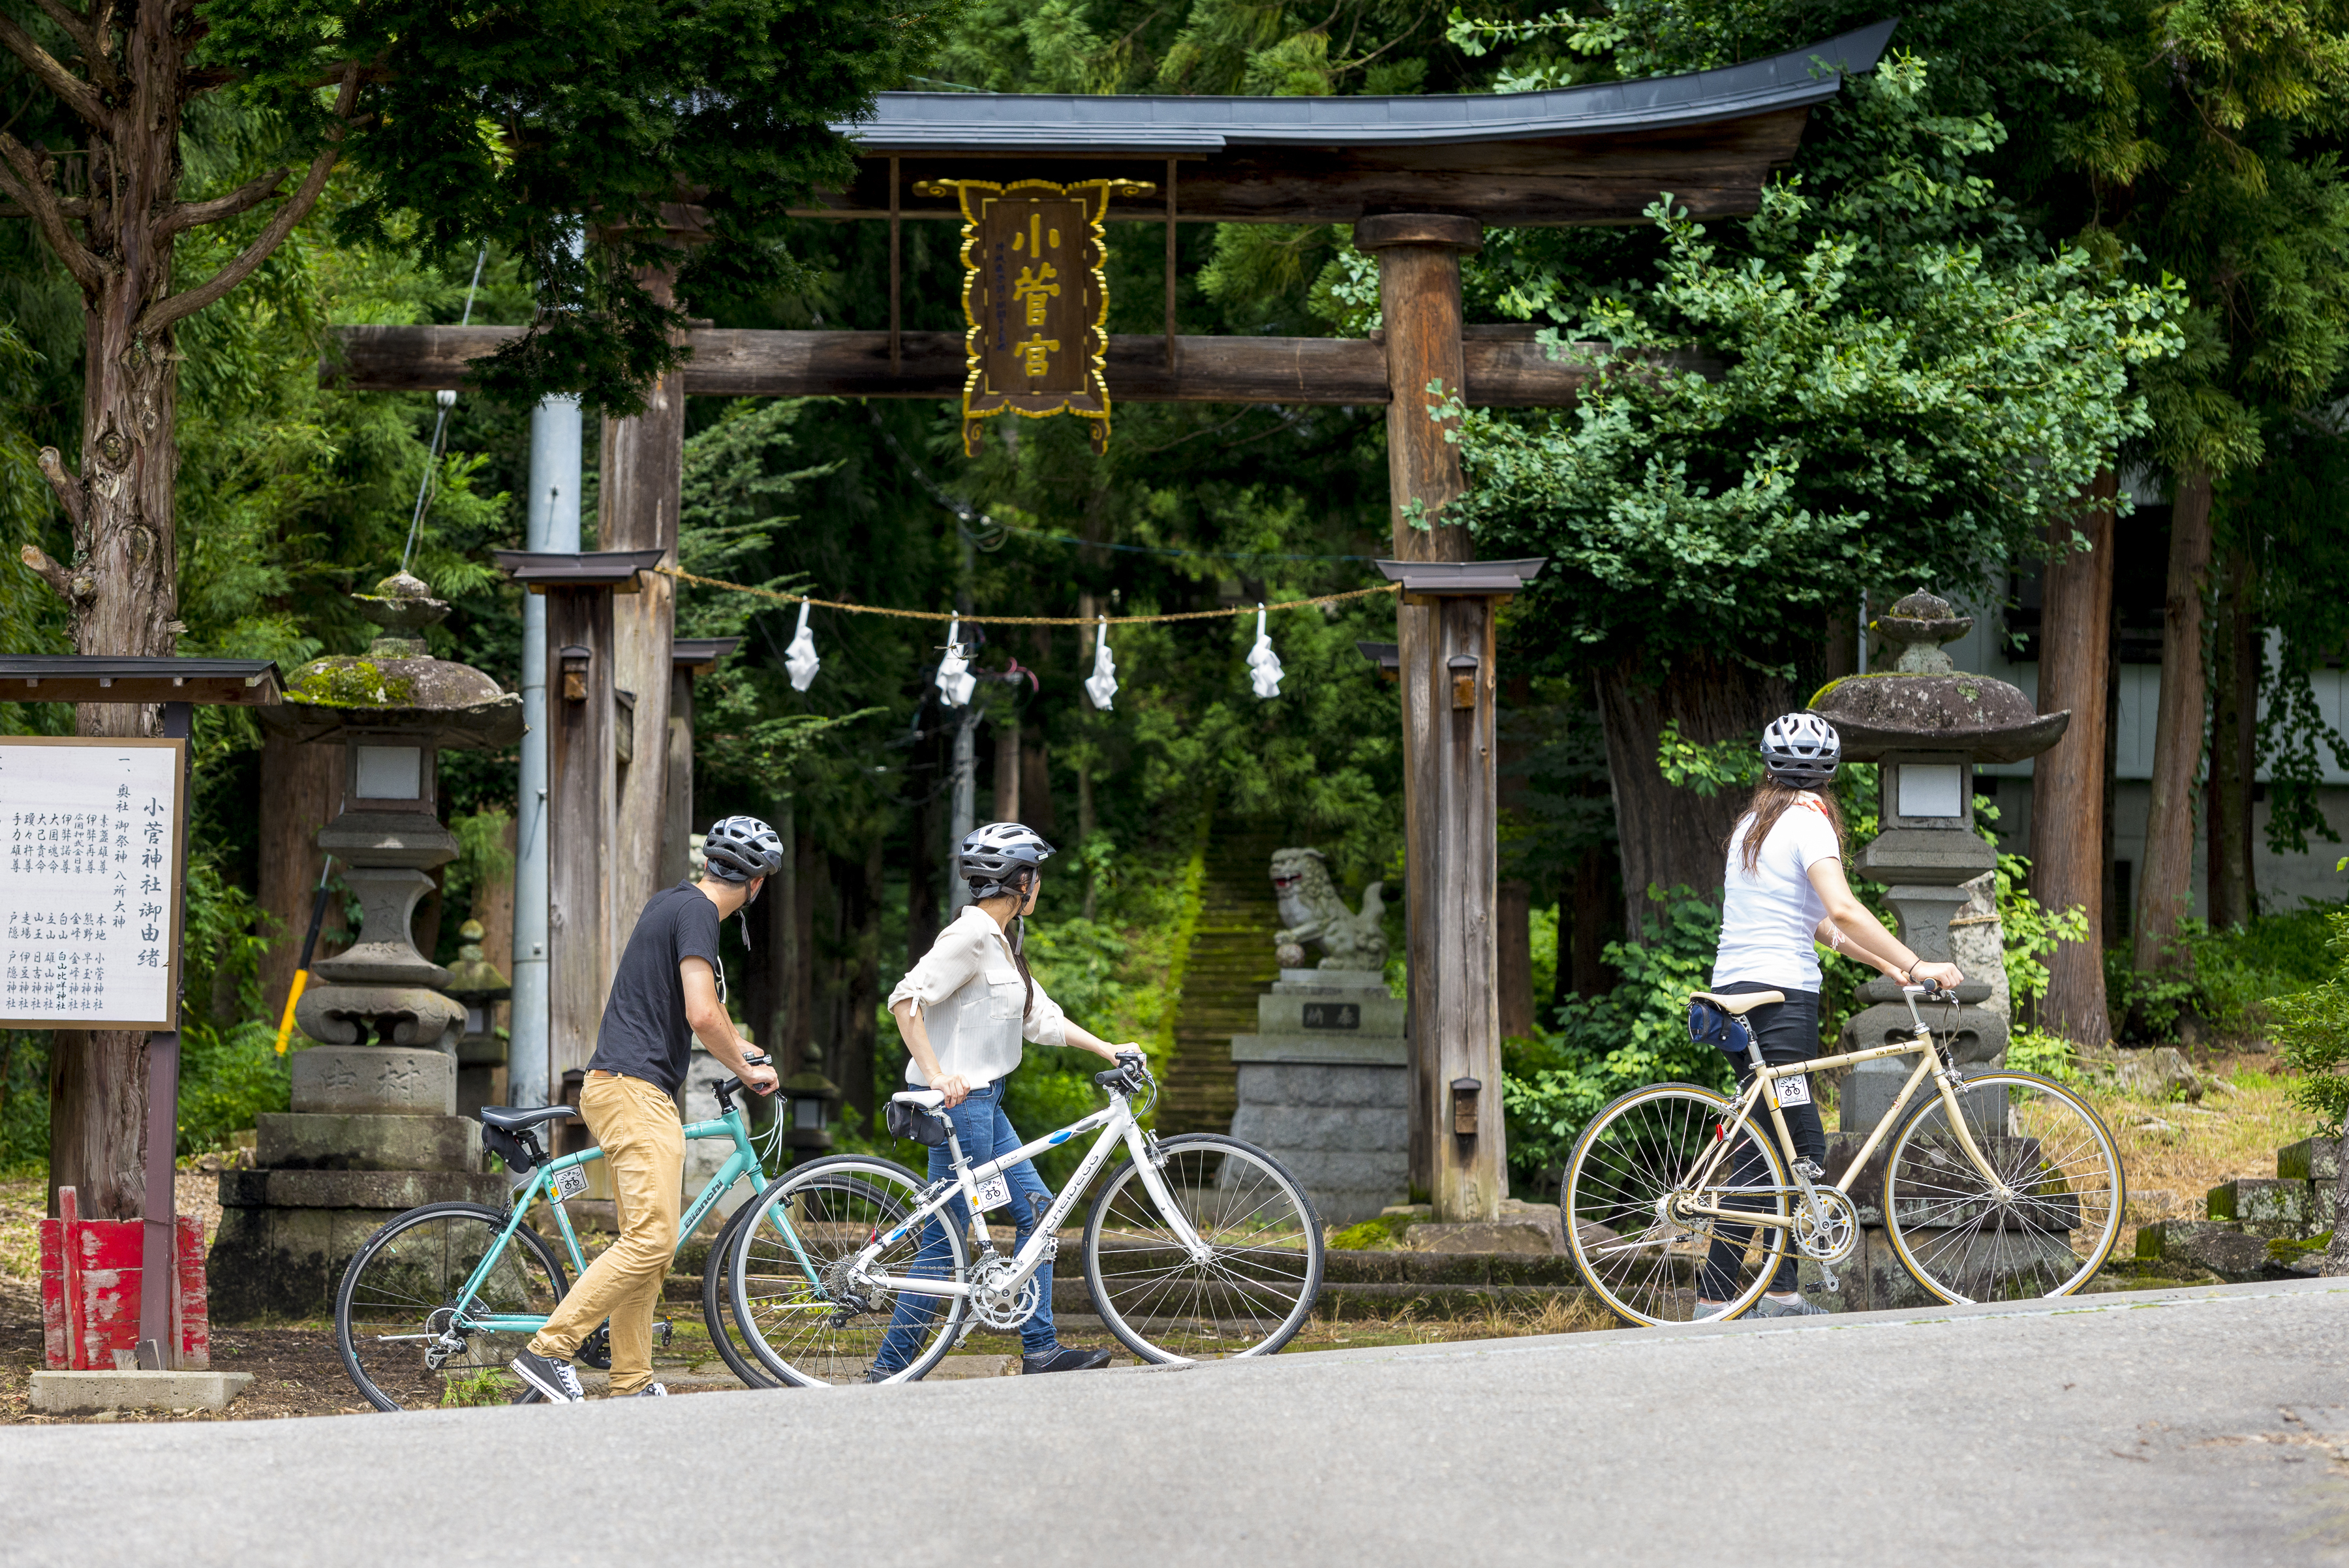 『小菅神社』は奥信濃三山と称せられた修験道の霊山。国の重要文化財に指定されており、なんといっても見どころは戸隠神社を彷彿させる杉並木の参道です。